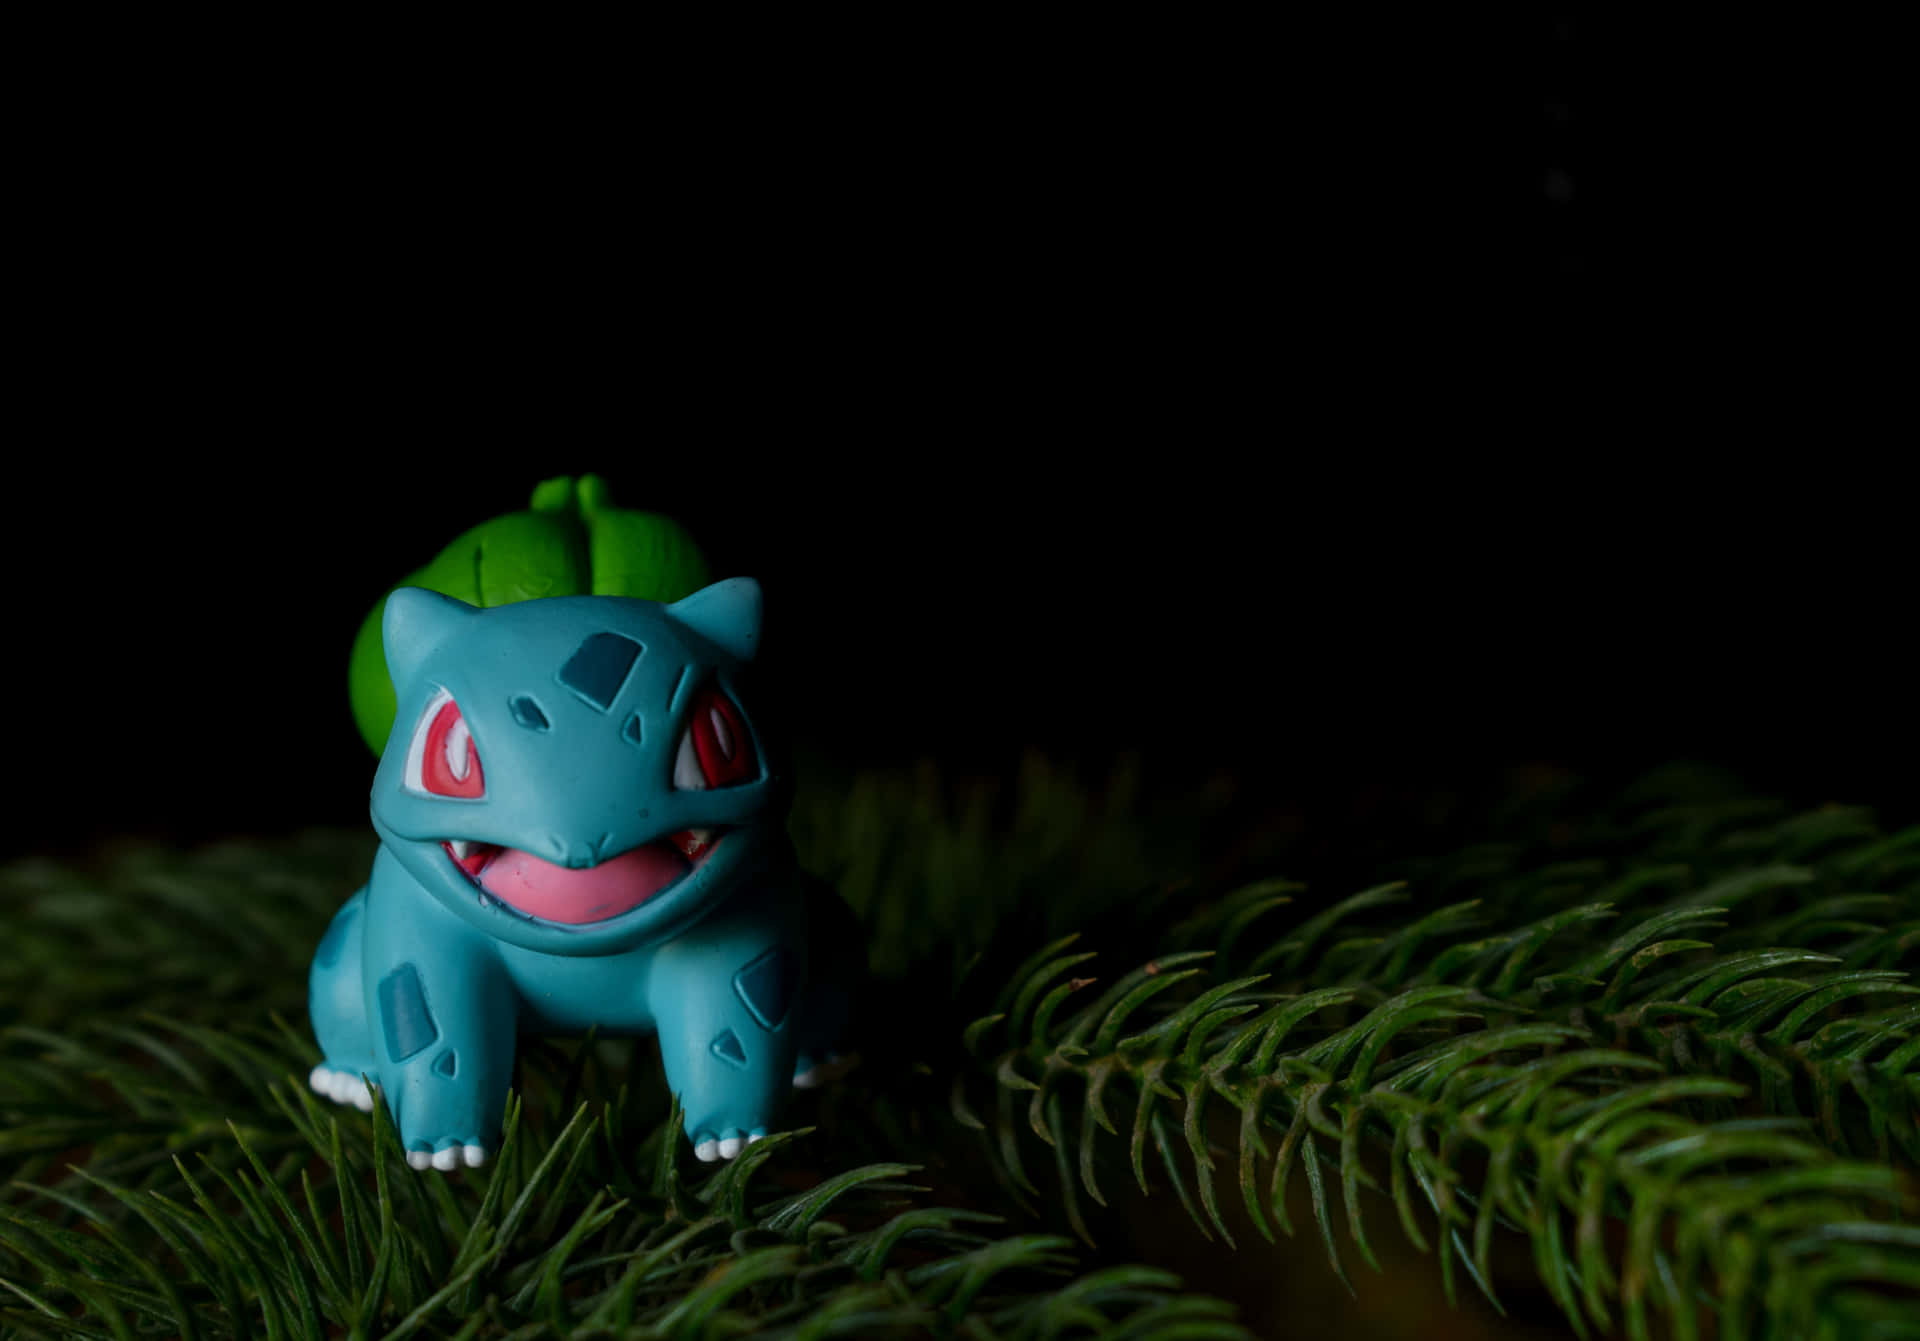 Unavariedad Colorida De Juguetes De Pokémon En Acción. Fondo de pantalla